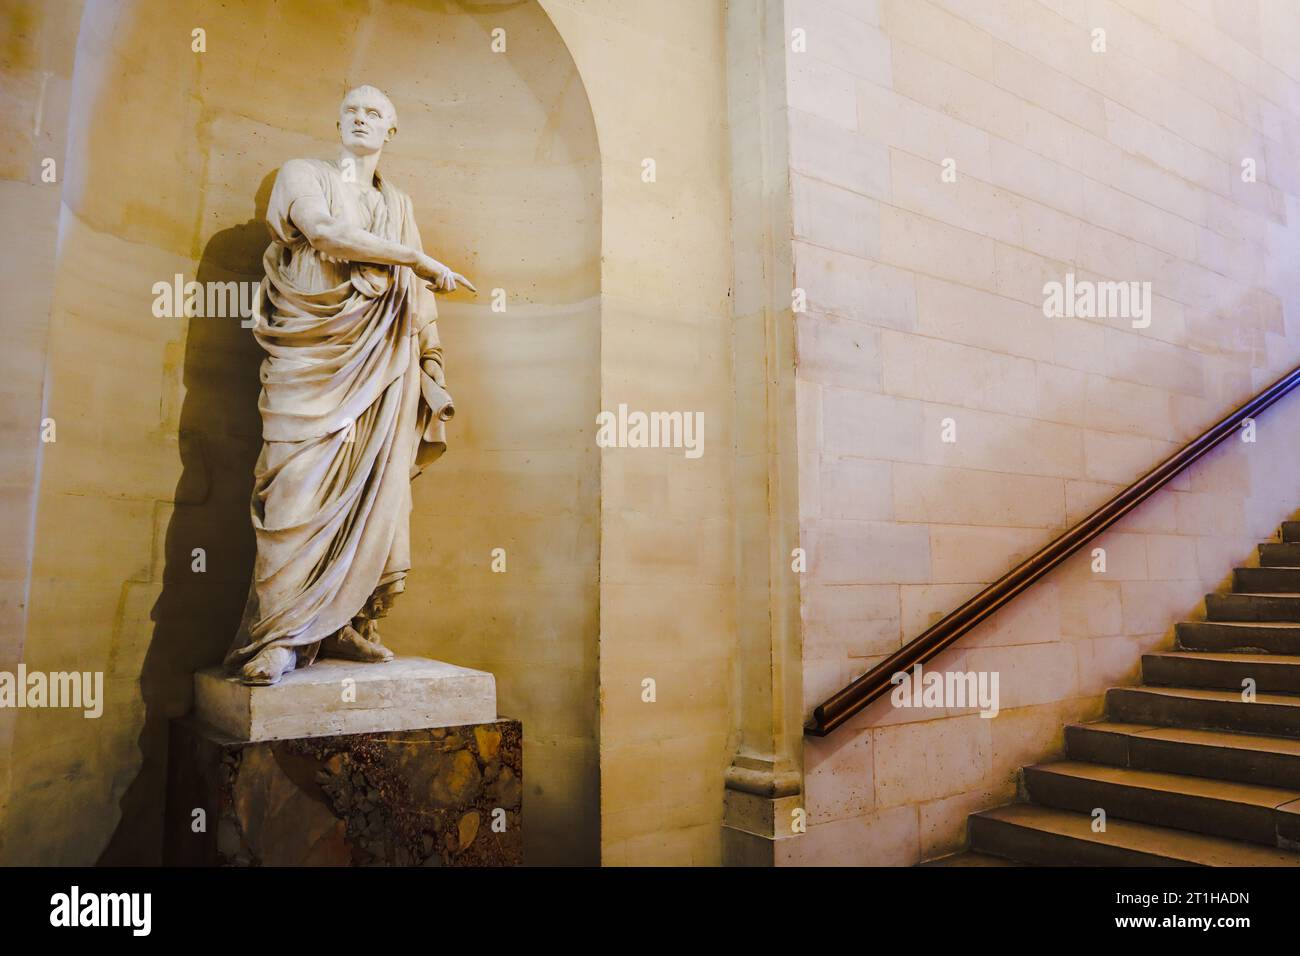 Marcus Tullius Cicero (Cicéron) von Jean-Antoine Houdon. Skulpturengalerie im Louvre. Louvre Museum, Paris, Frankreich. Stockfoto